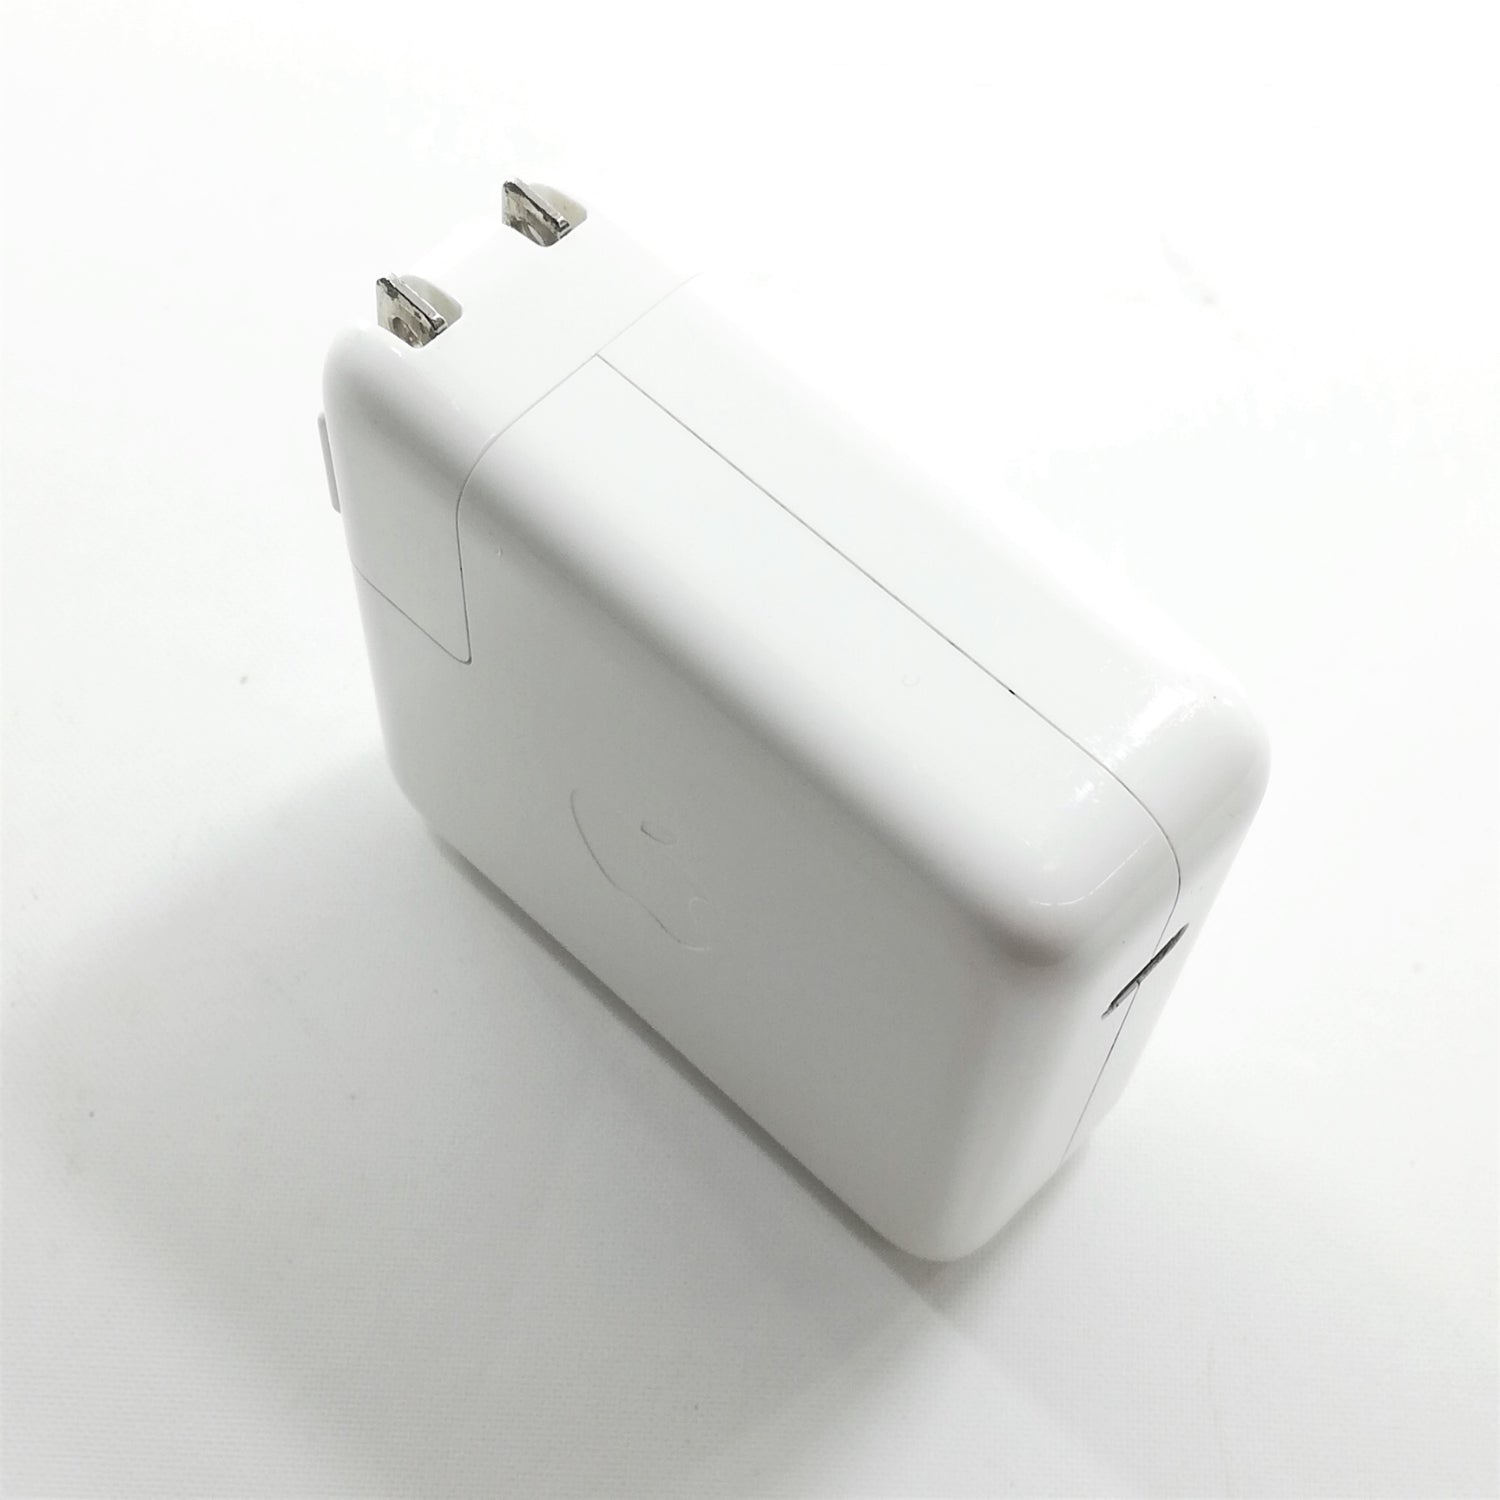 中古品】Apple 61W USB-C電源アダプタ [A_MNF72J/A] – 秋葉館